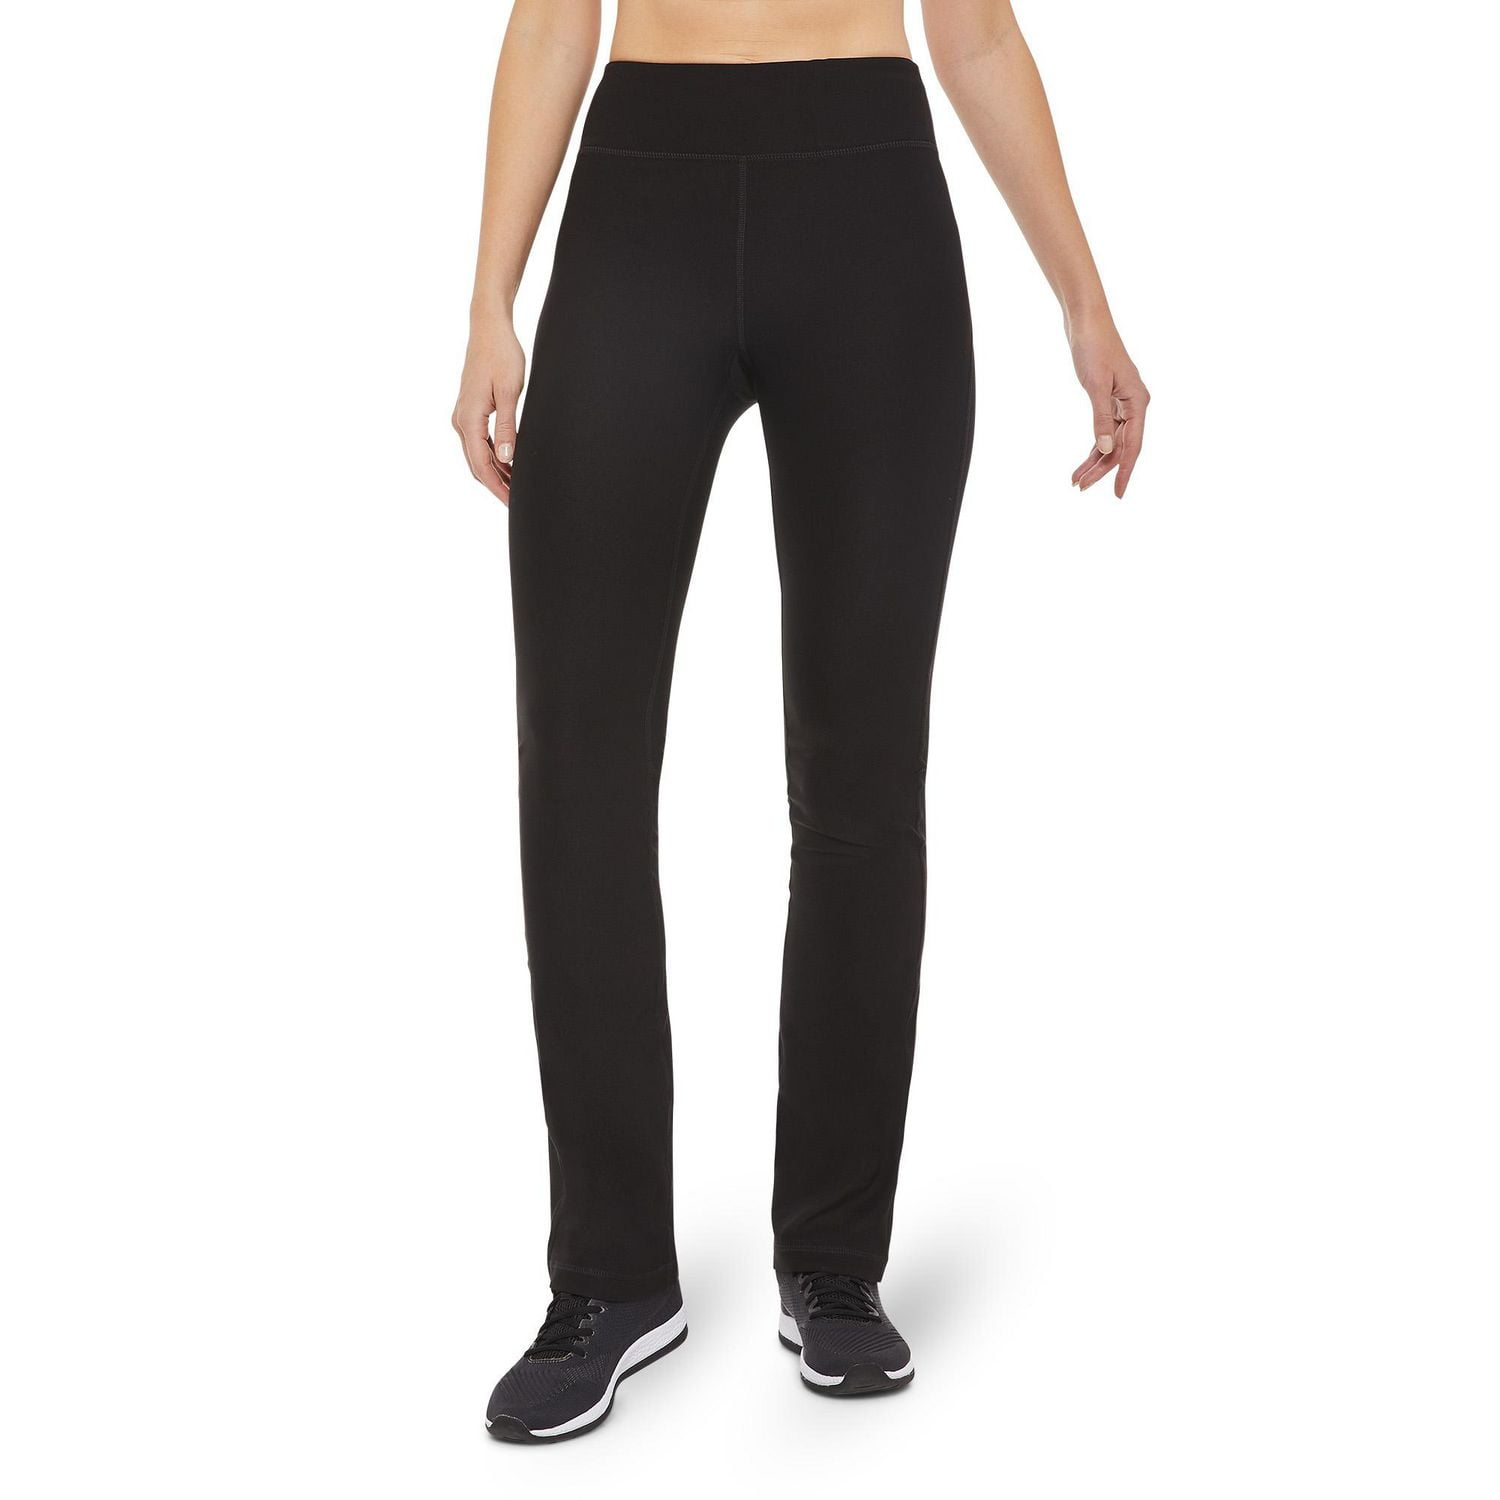 FILA Women's Straight-Leg Charcoal Grey Cotton Blend Yoga Pants - Size XS 